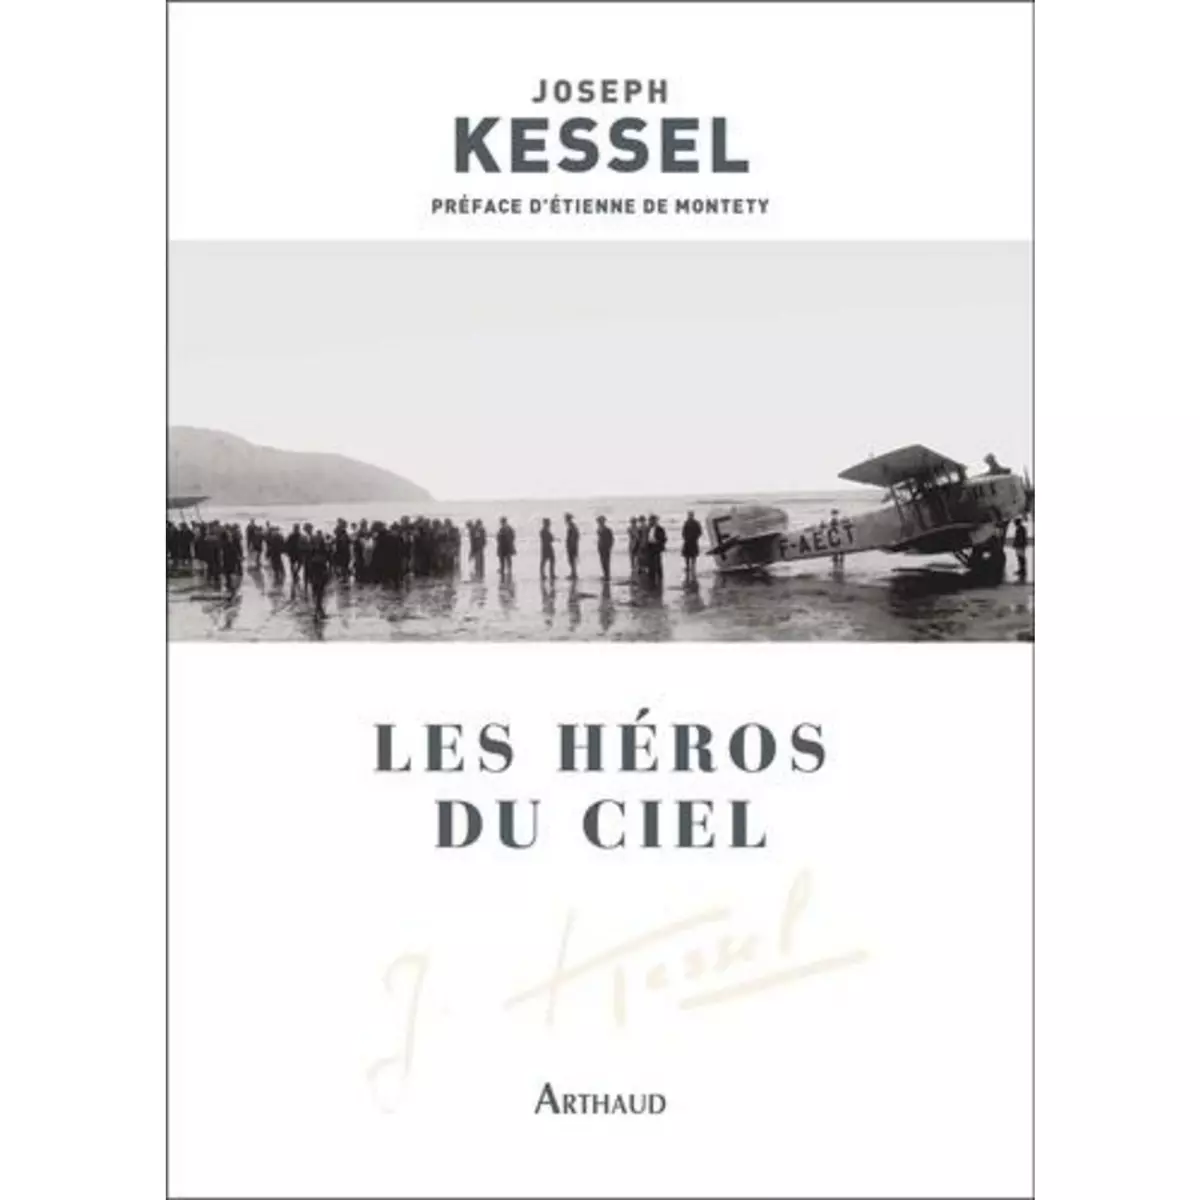  LES HEROS DU CIEL, Kessel Joseph